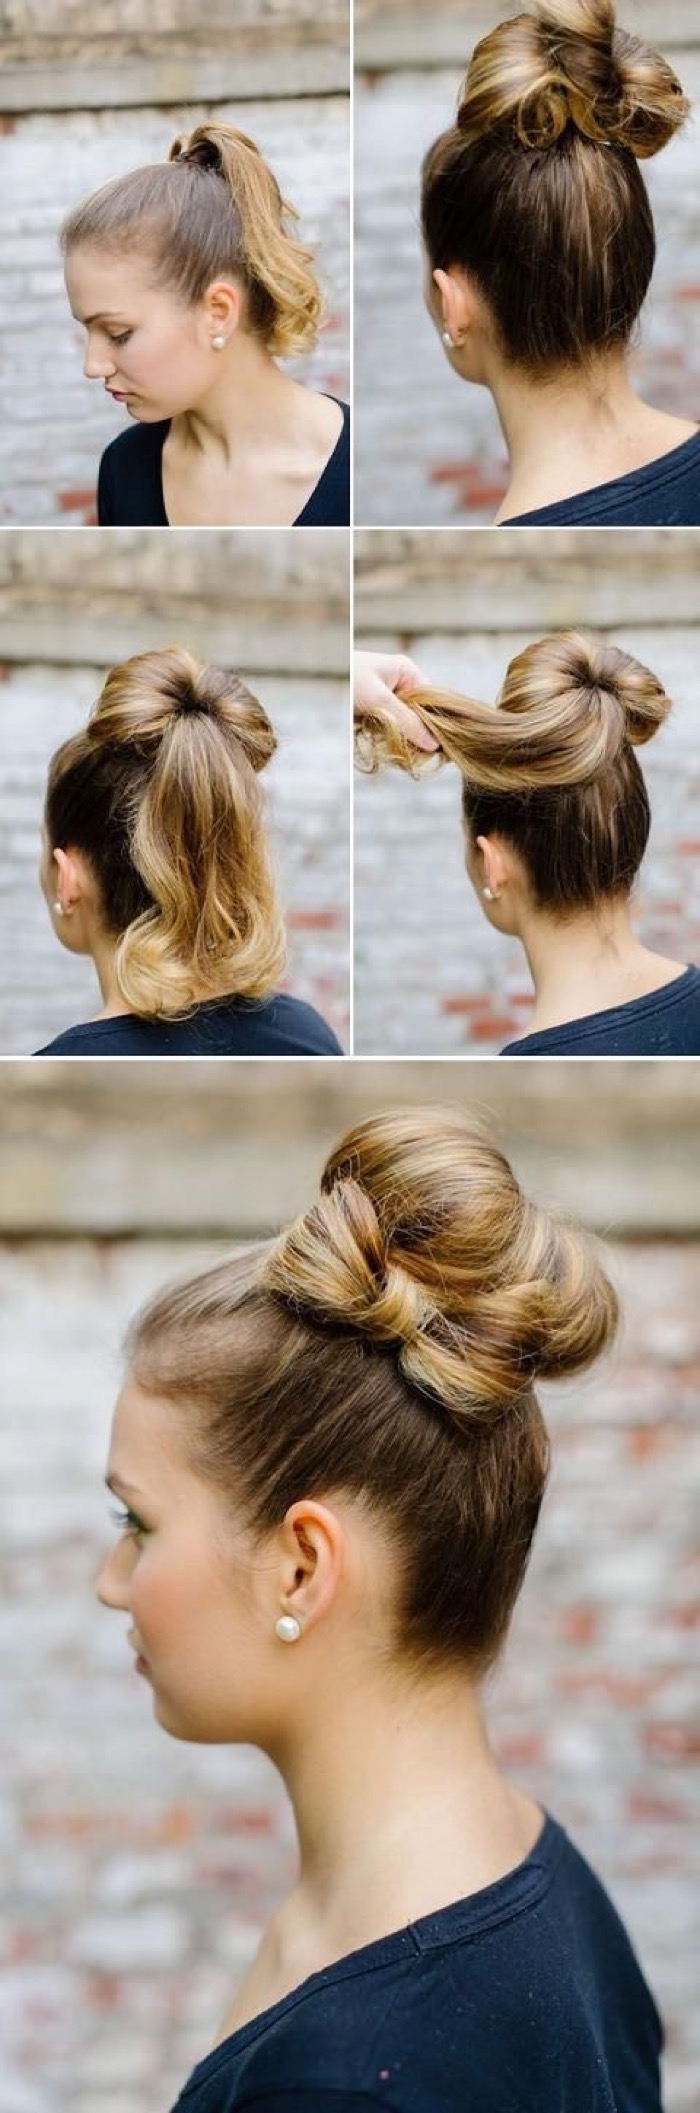 Hair bun with a bow